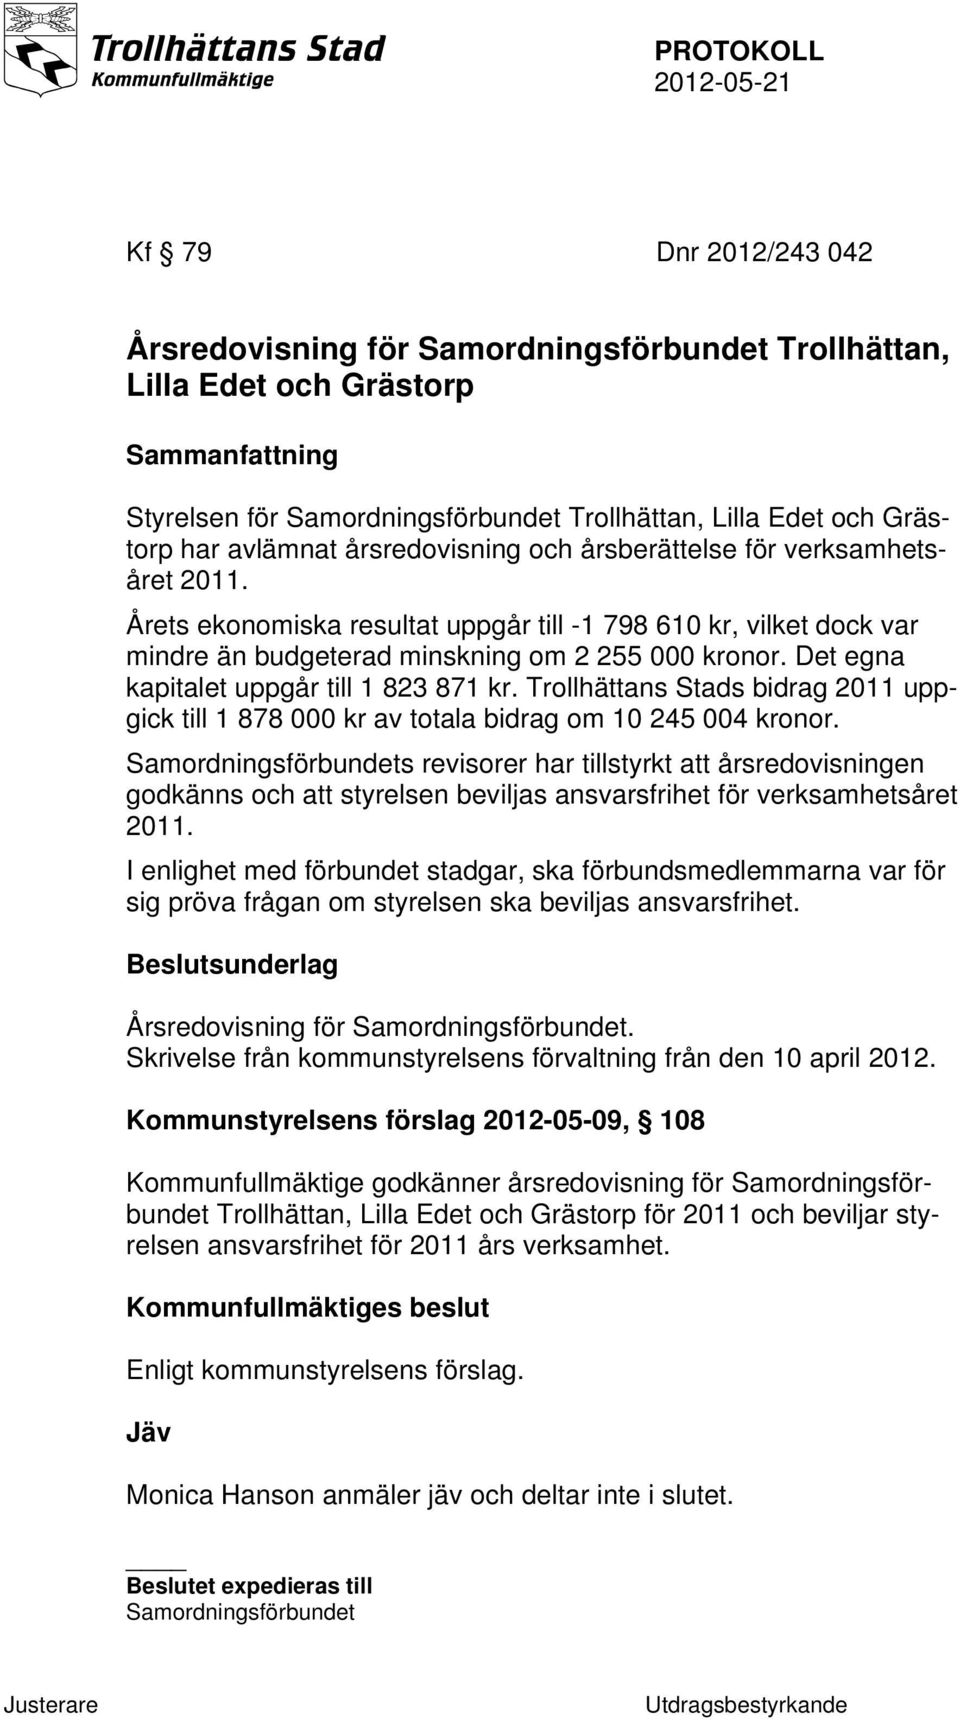 Det egna kapitalet uppgår till 1 823 871 kr. Trollhättans Stads bidrag 2011 uppgick till 1 878 000 kr av totala bidrag om 10 245 004 kronor.